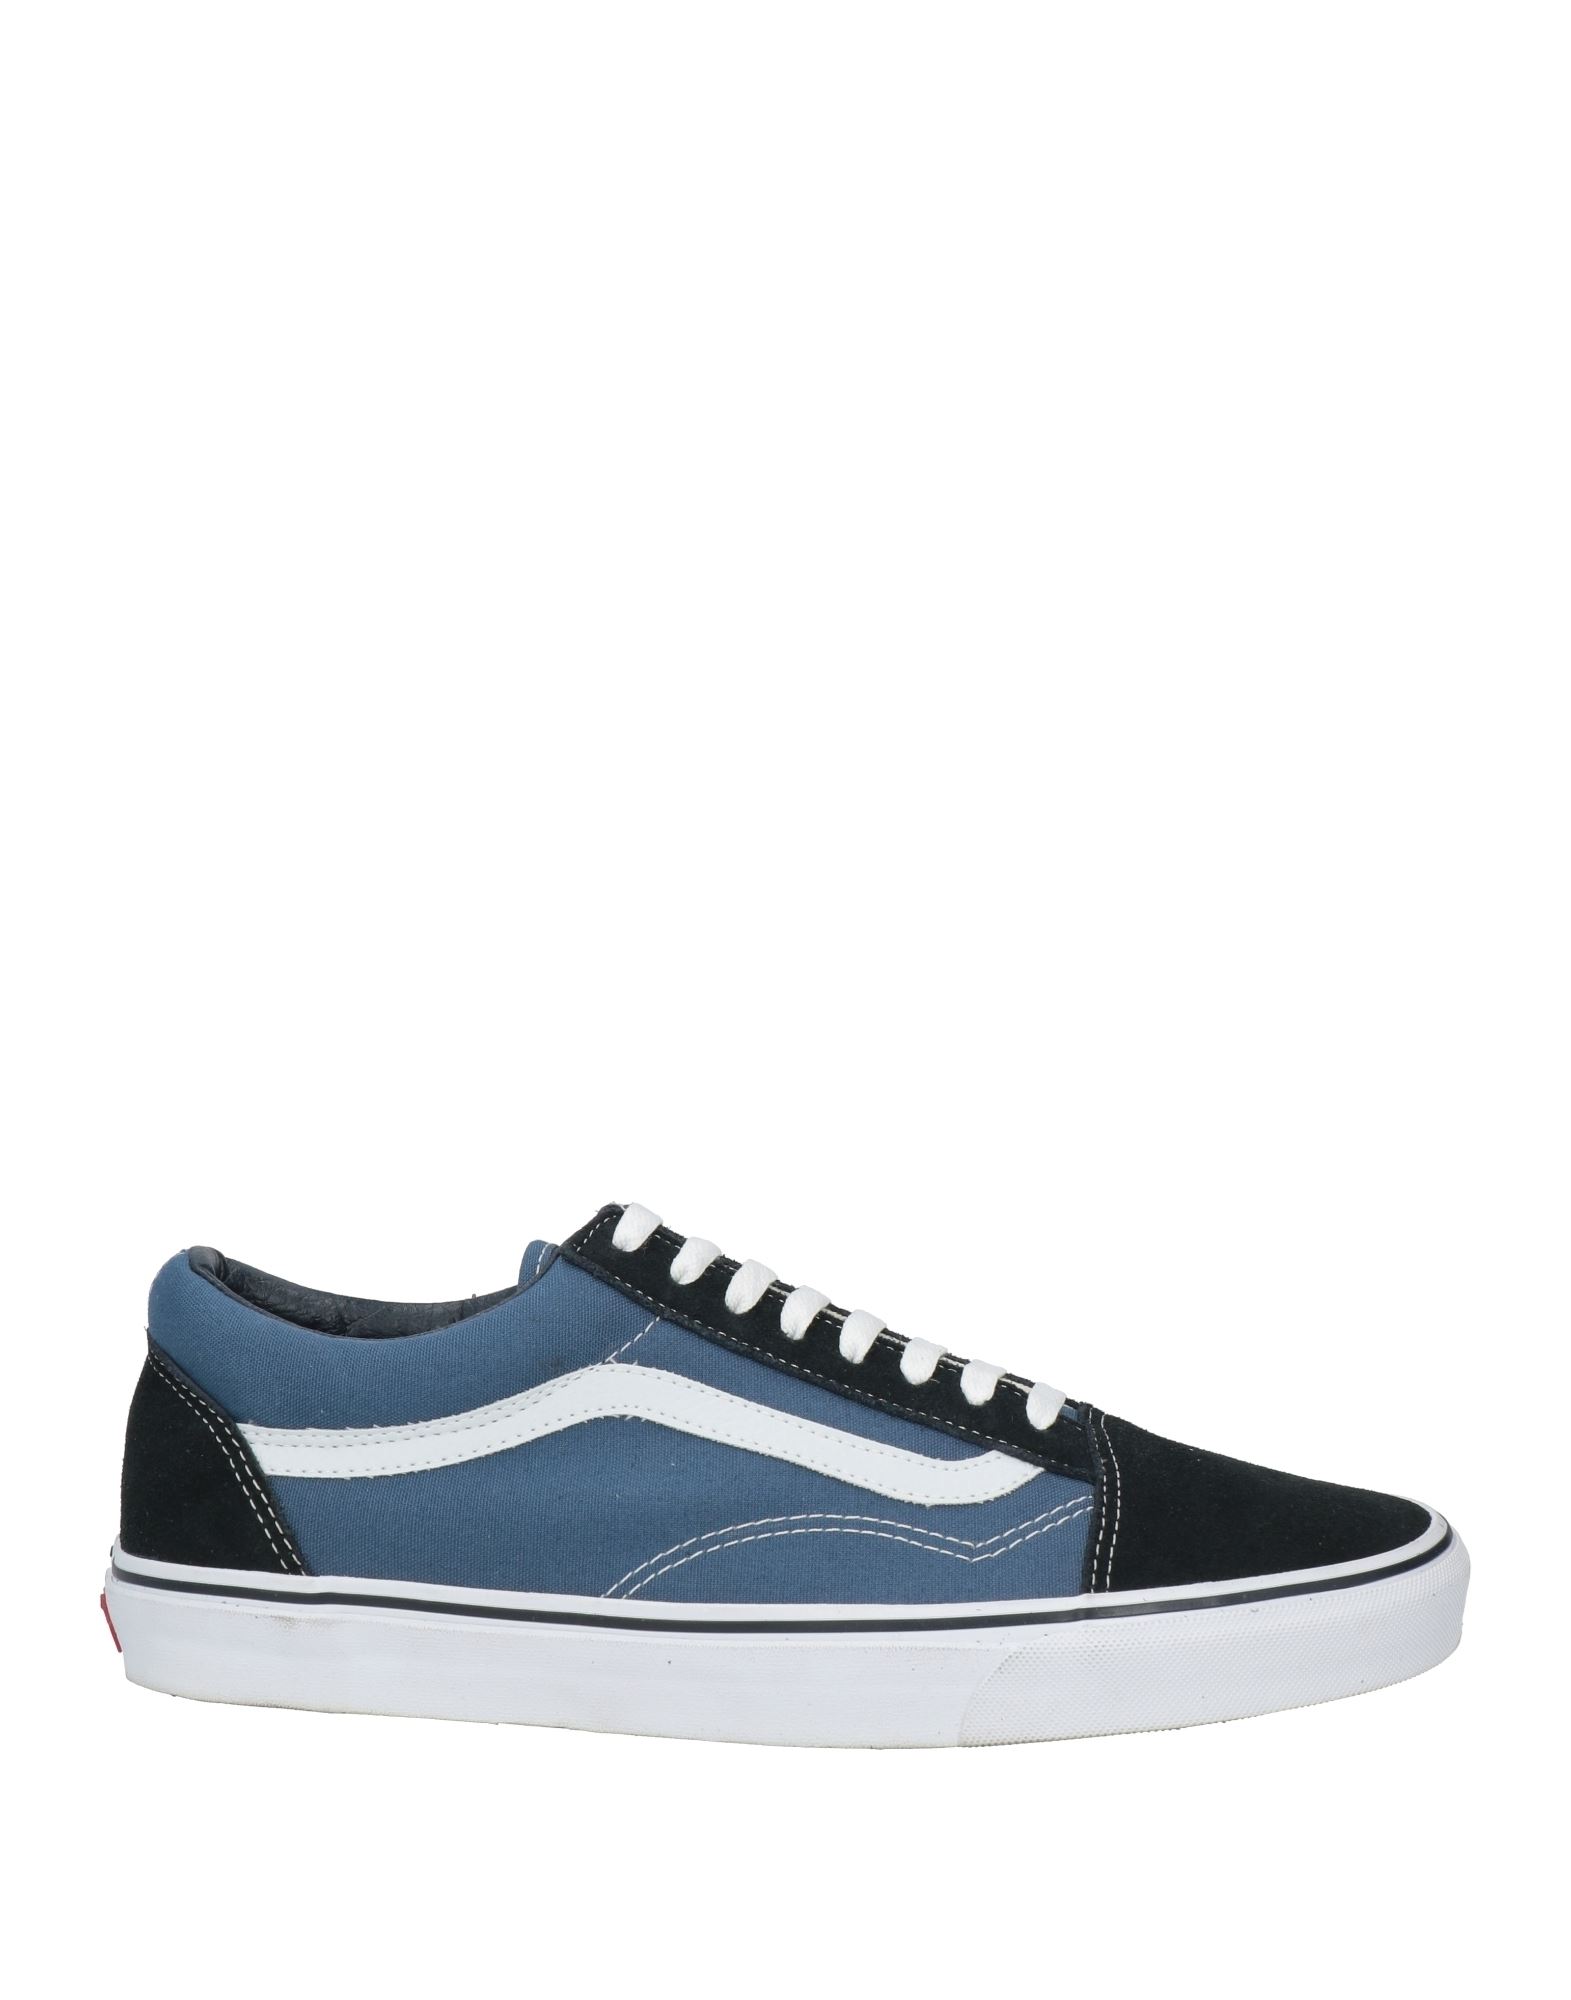 Vans Sneakers In Navy Blue